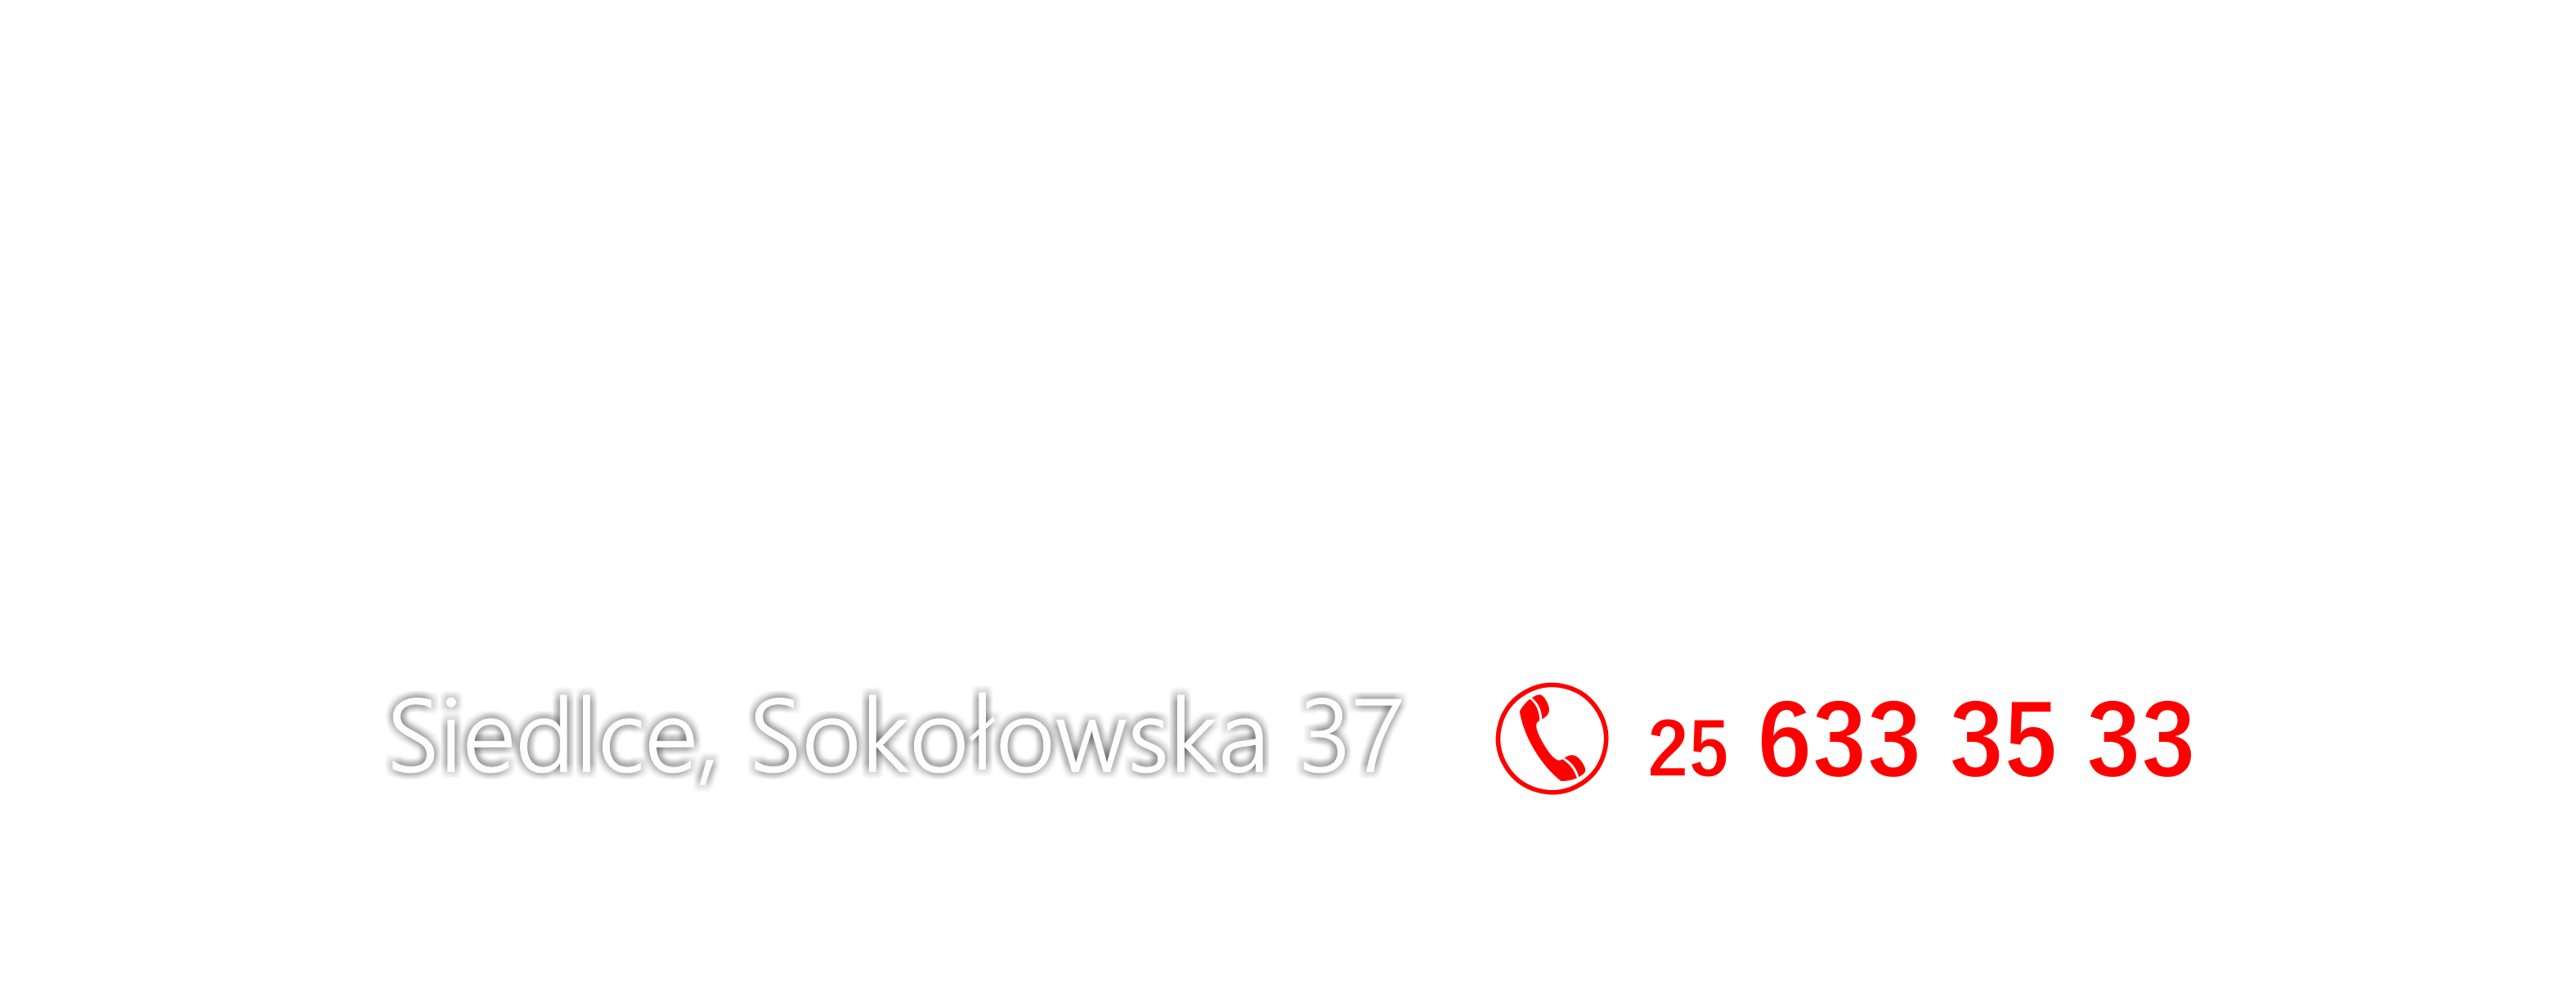 Pizzeria Verona | Siedlce